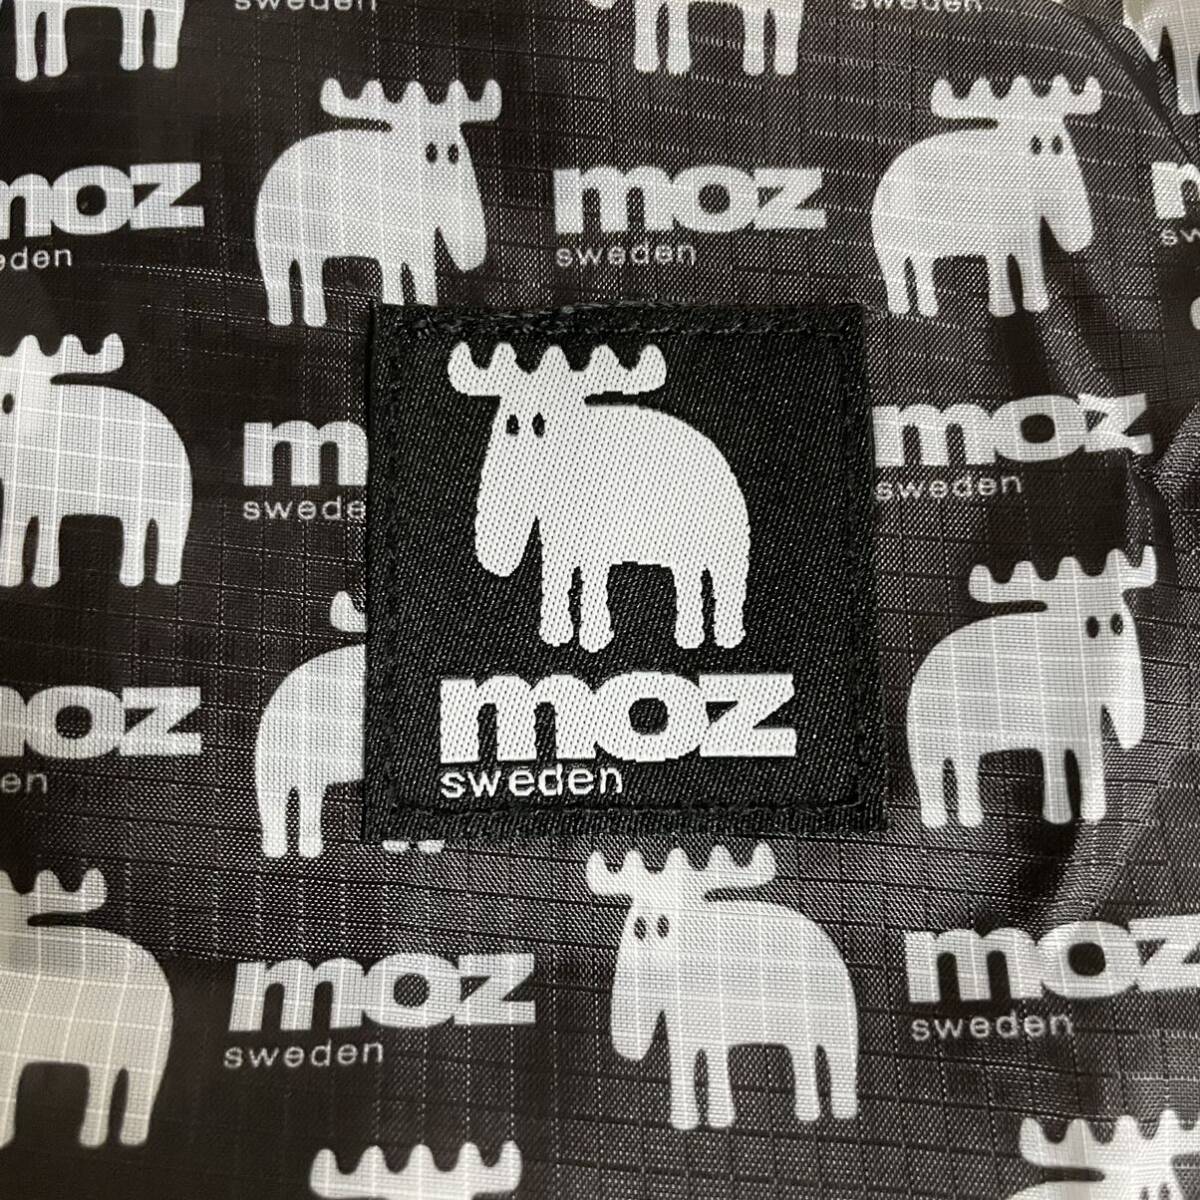 2 шт. комплект MOZ эко-сумка новый товар не использовался 